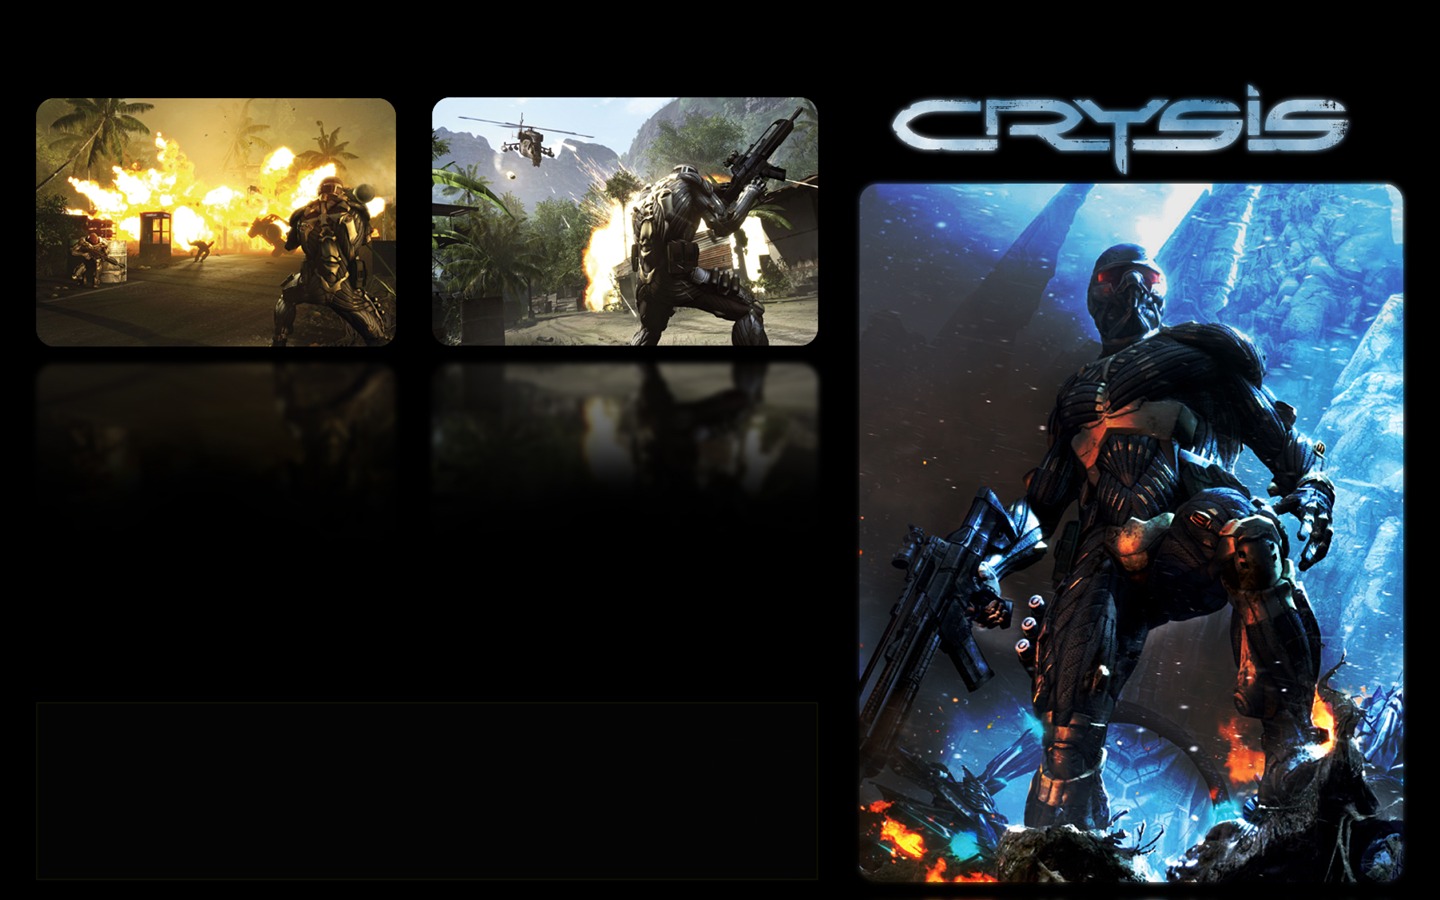  Crysisの壁紙(2) #3 - 1440x900